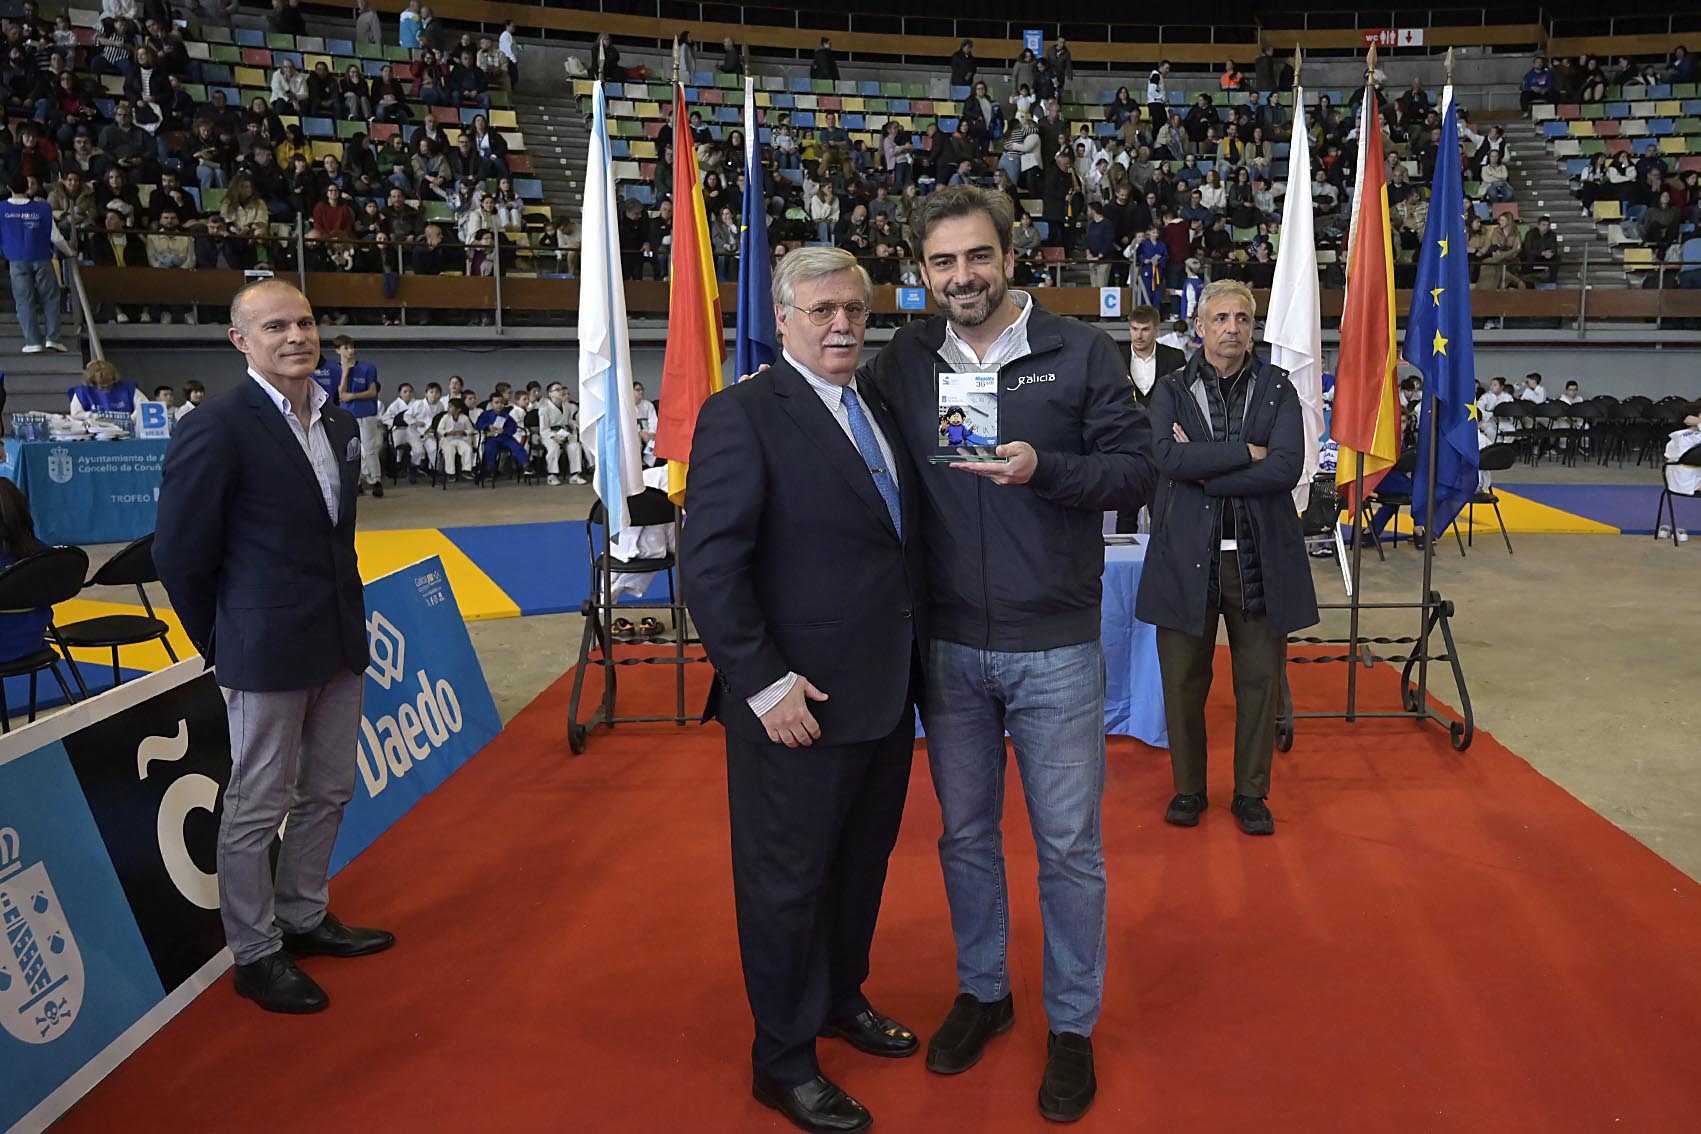 Image 2 of article Diego Calvo recolle o premio concedido á Xunta na 36ª edición do Trofeo de judo Miguelito